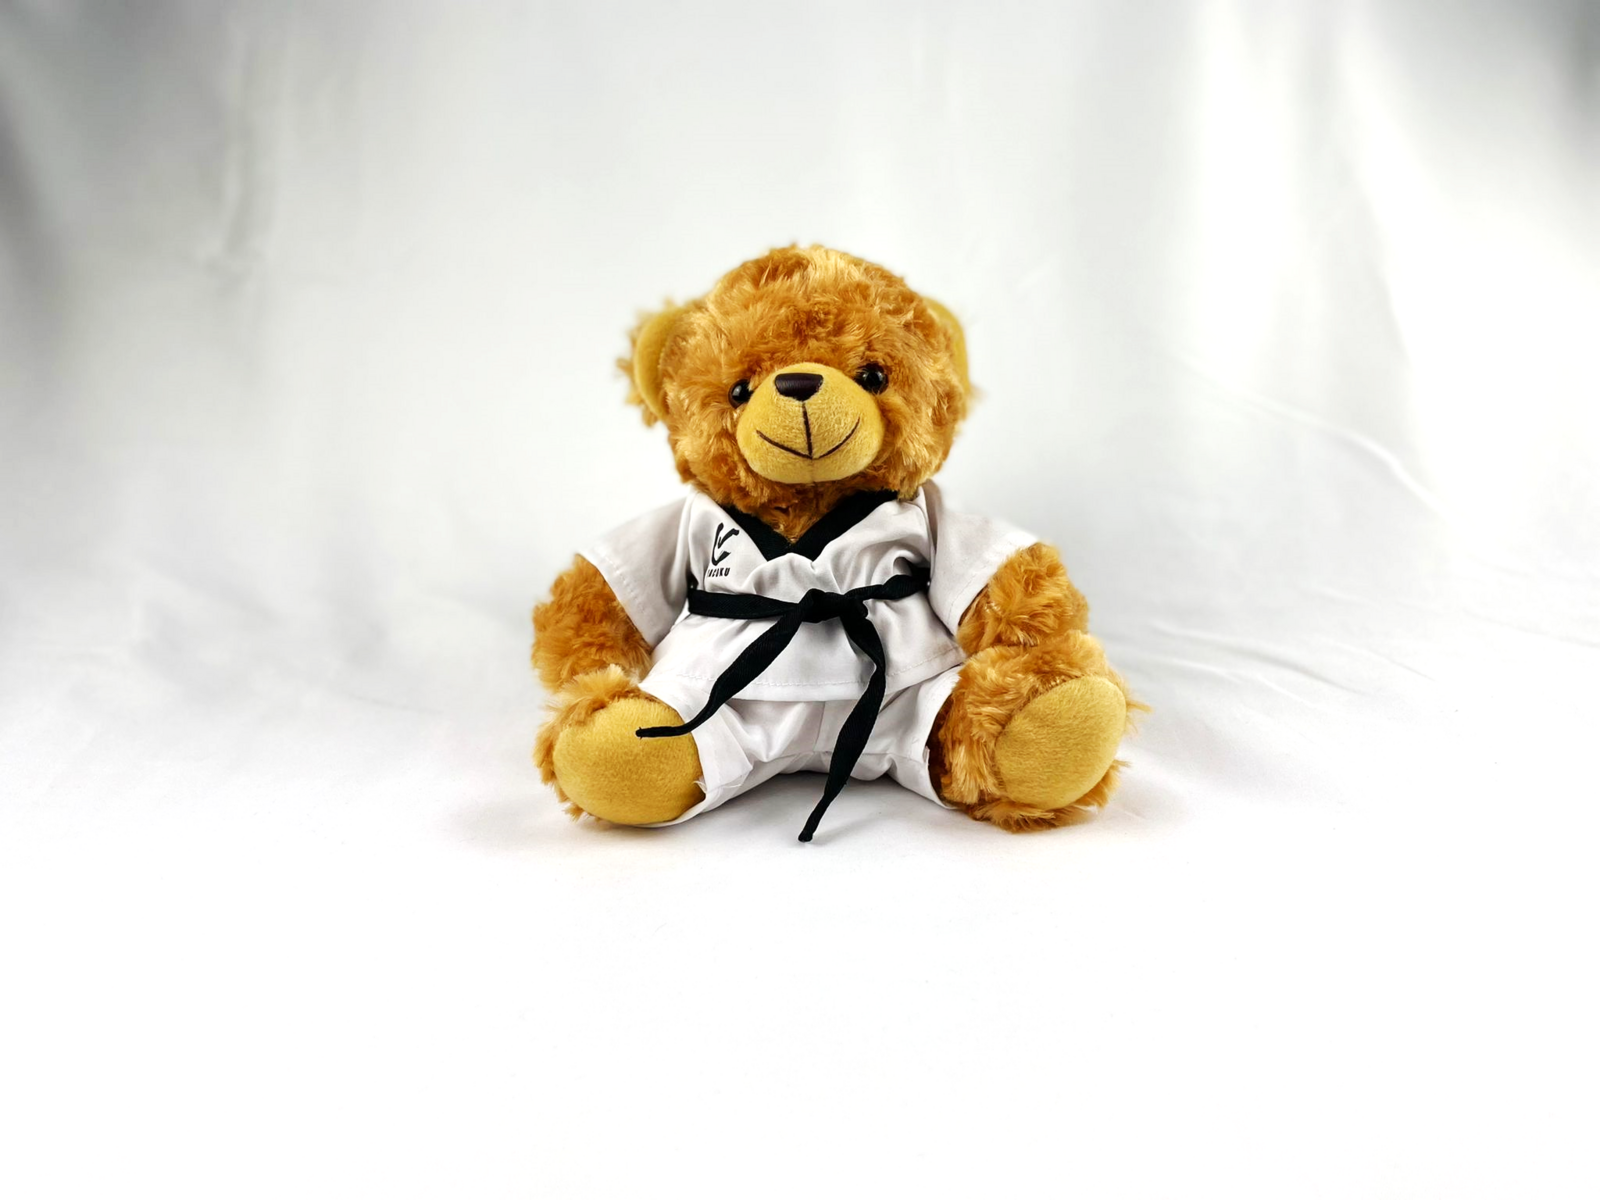 WACOKU - Taekwondo Plush Bear